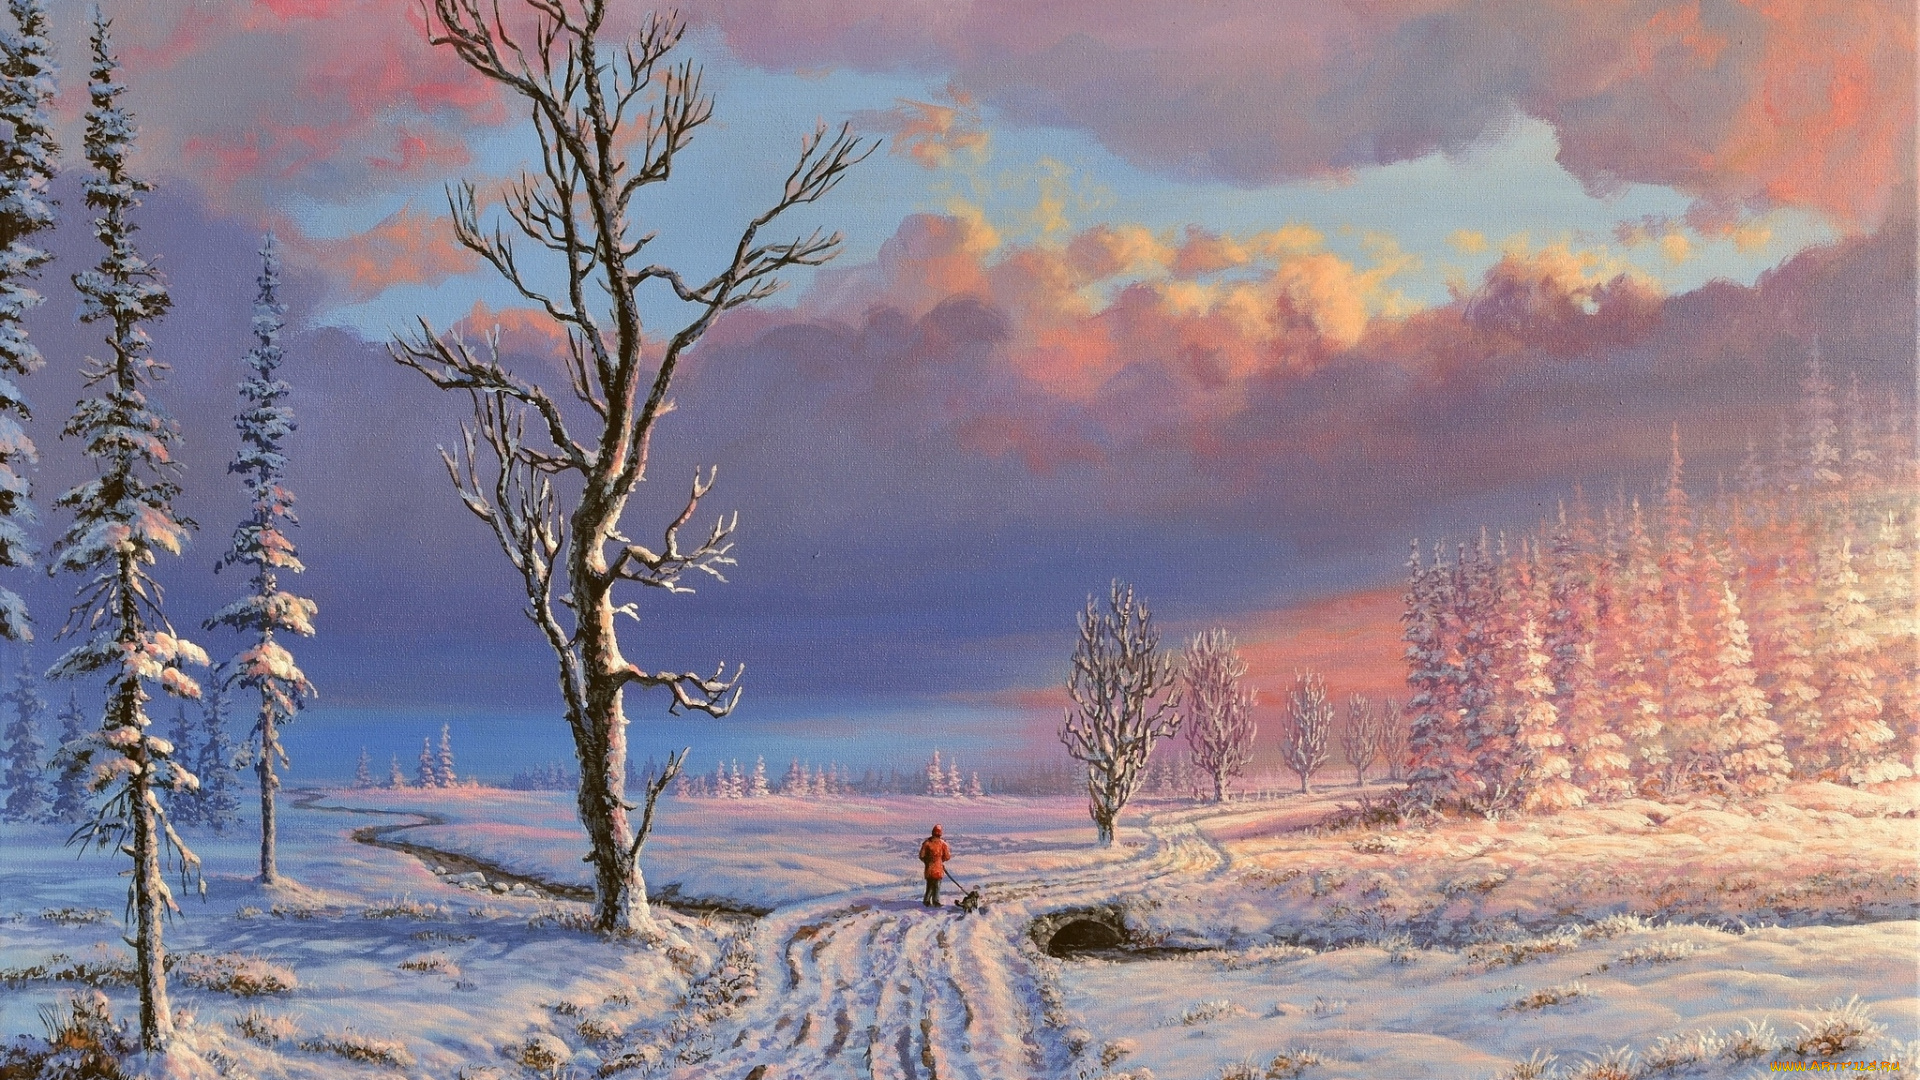 рисованное, живопись, облака, дорога, снег, зима, деревья, речка, человек